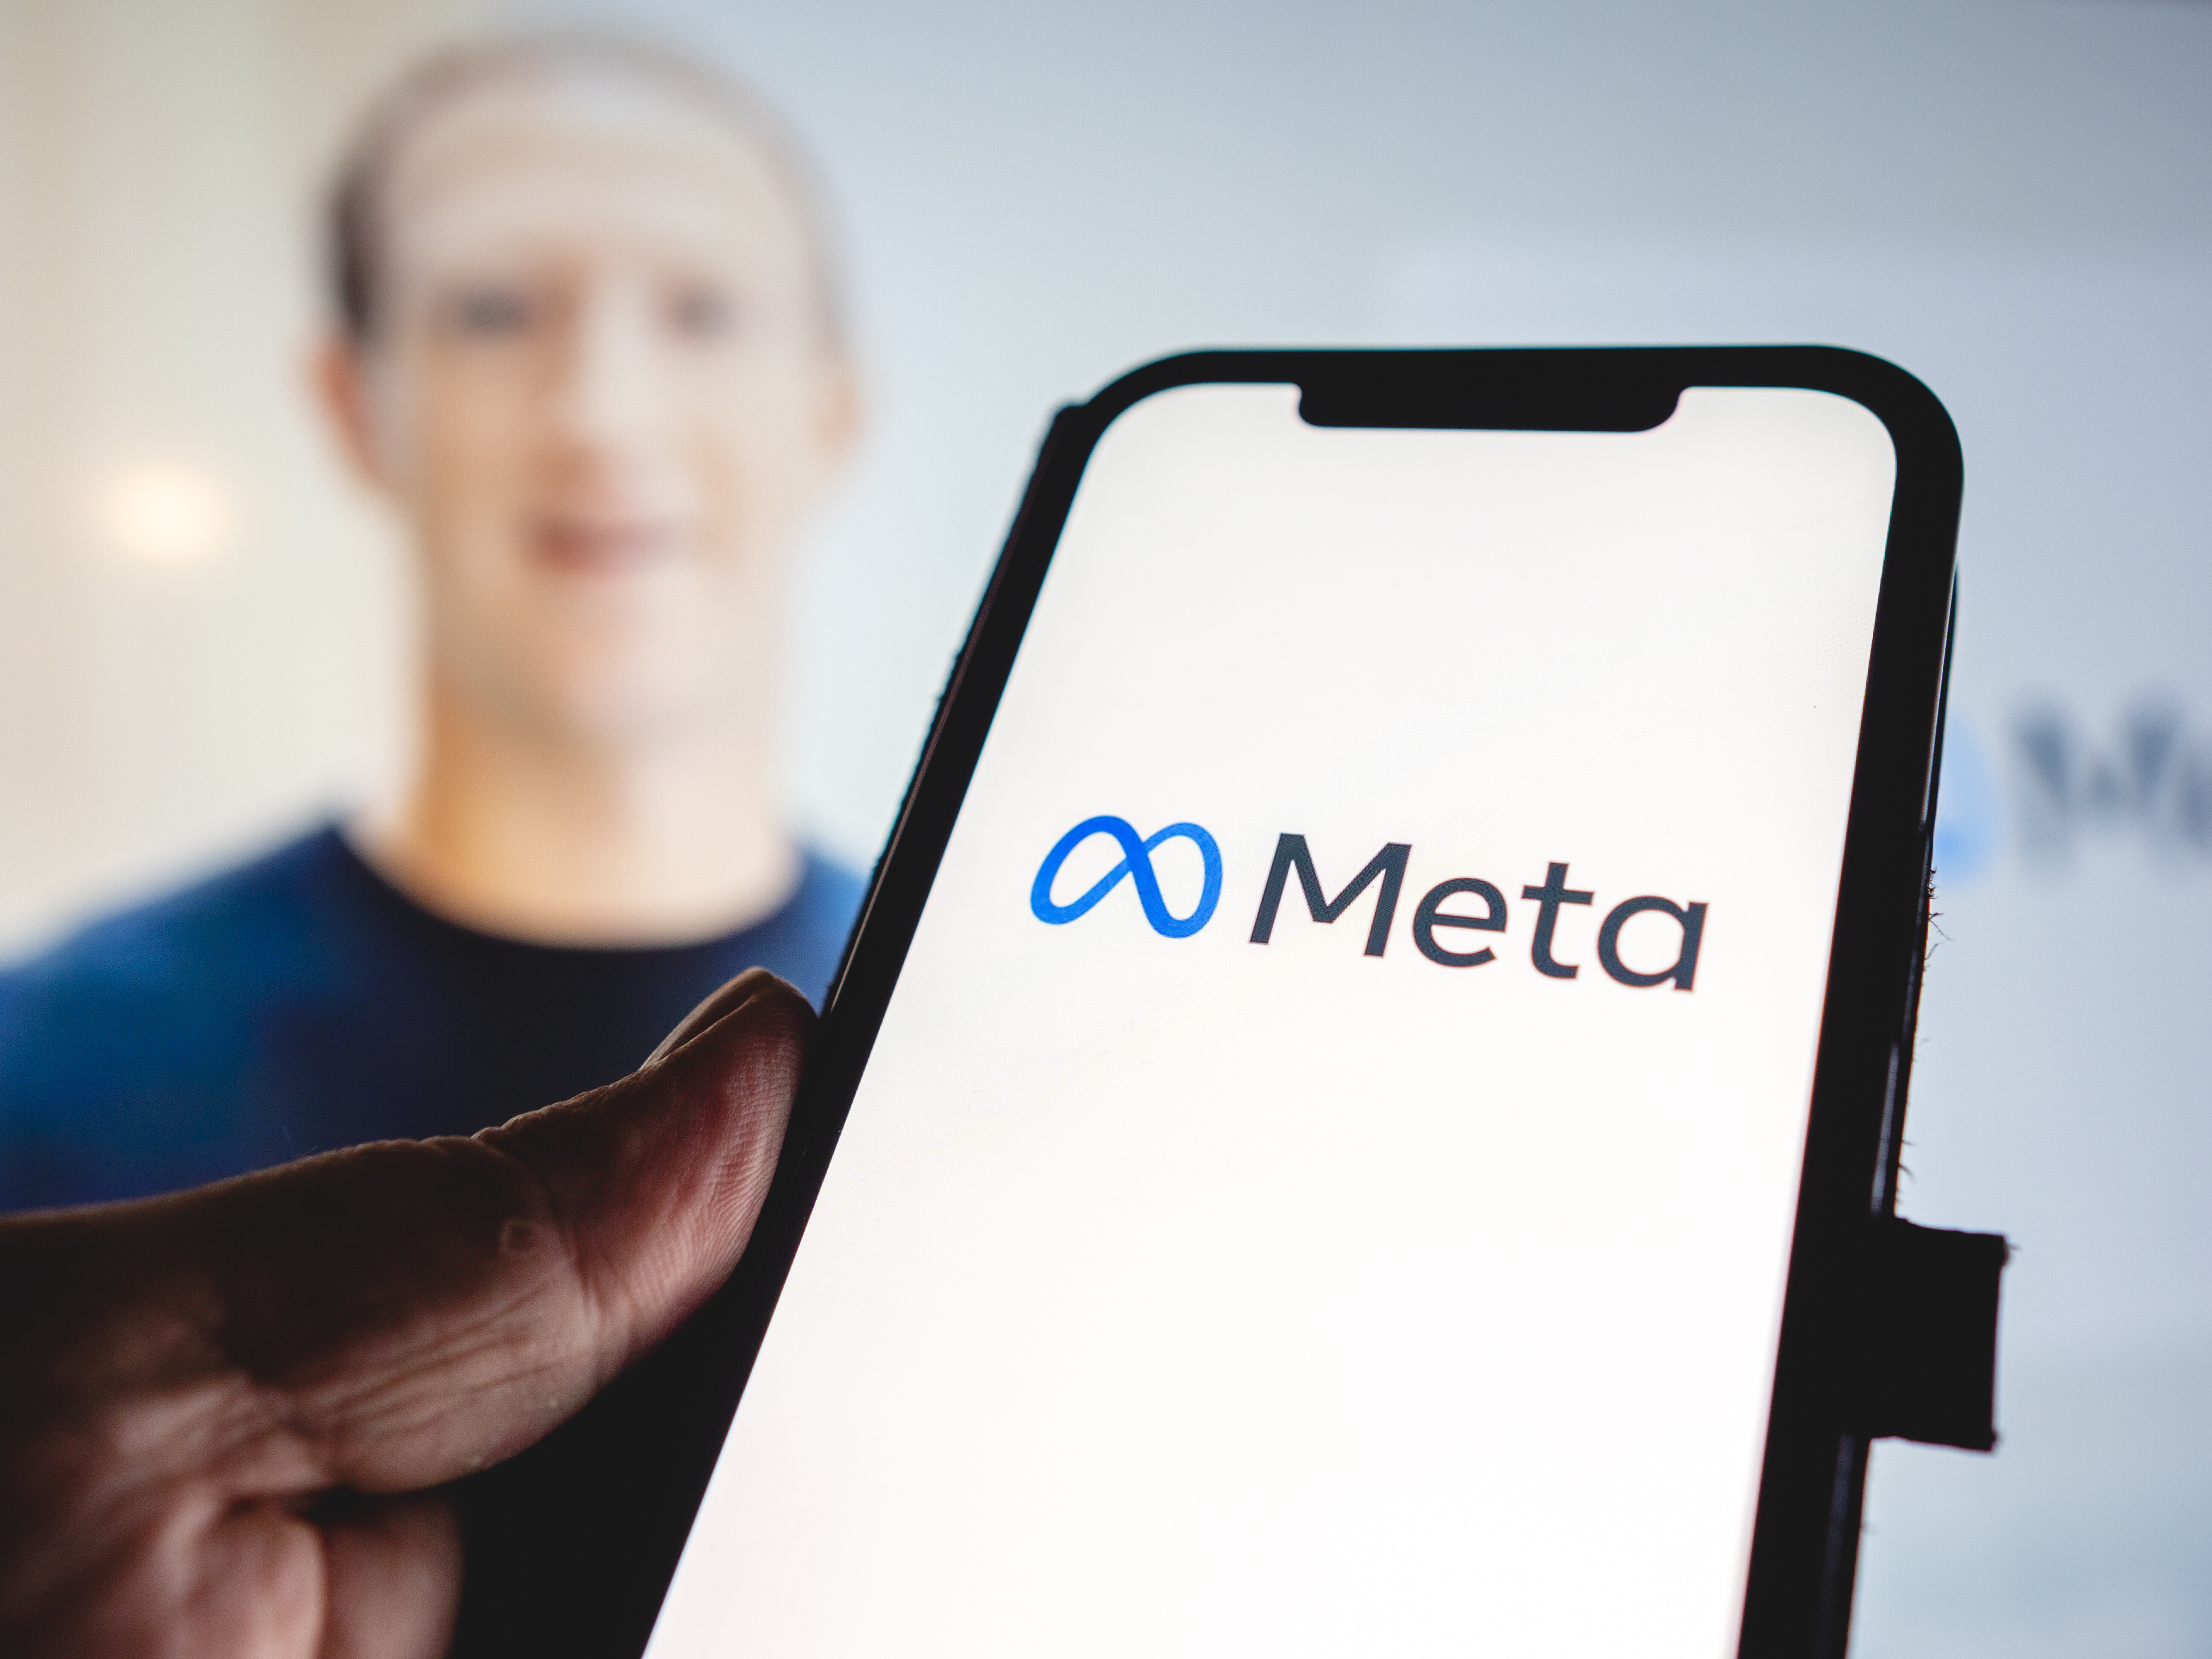 Meta’s Metaverse Business Loses Over $3.5 Billion in Q3 2022